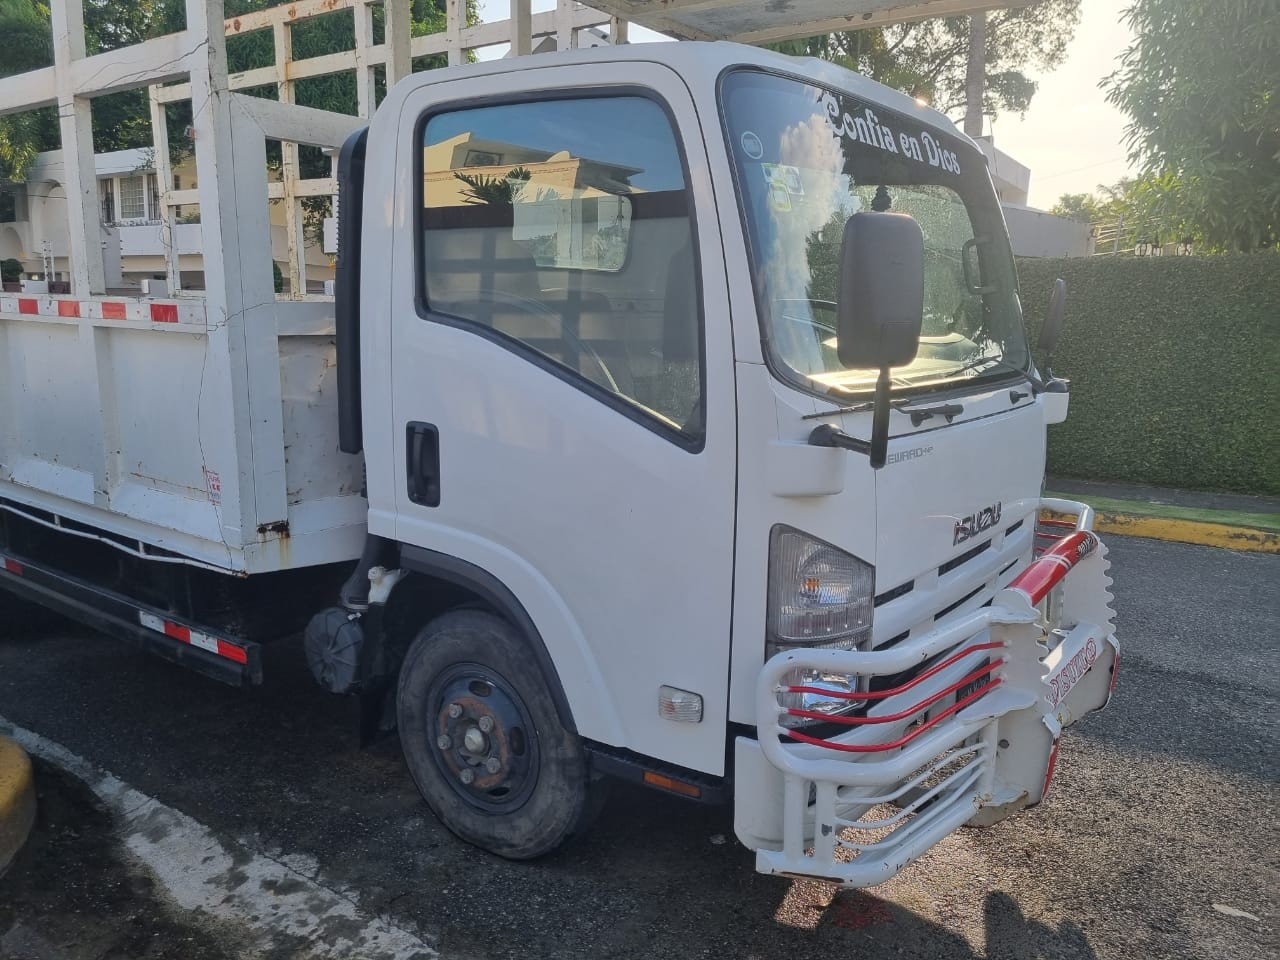 Camion isuzu cama larga 2018 poco kilometraje 29725 km oferta